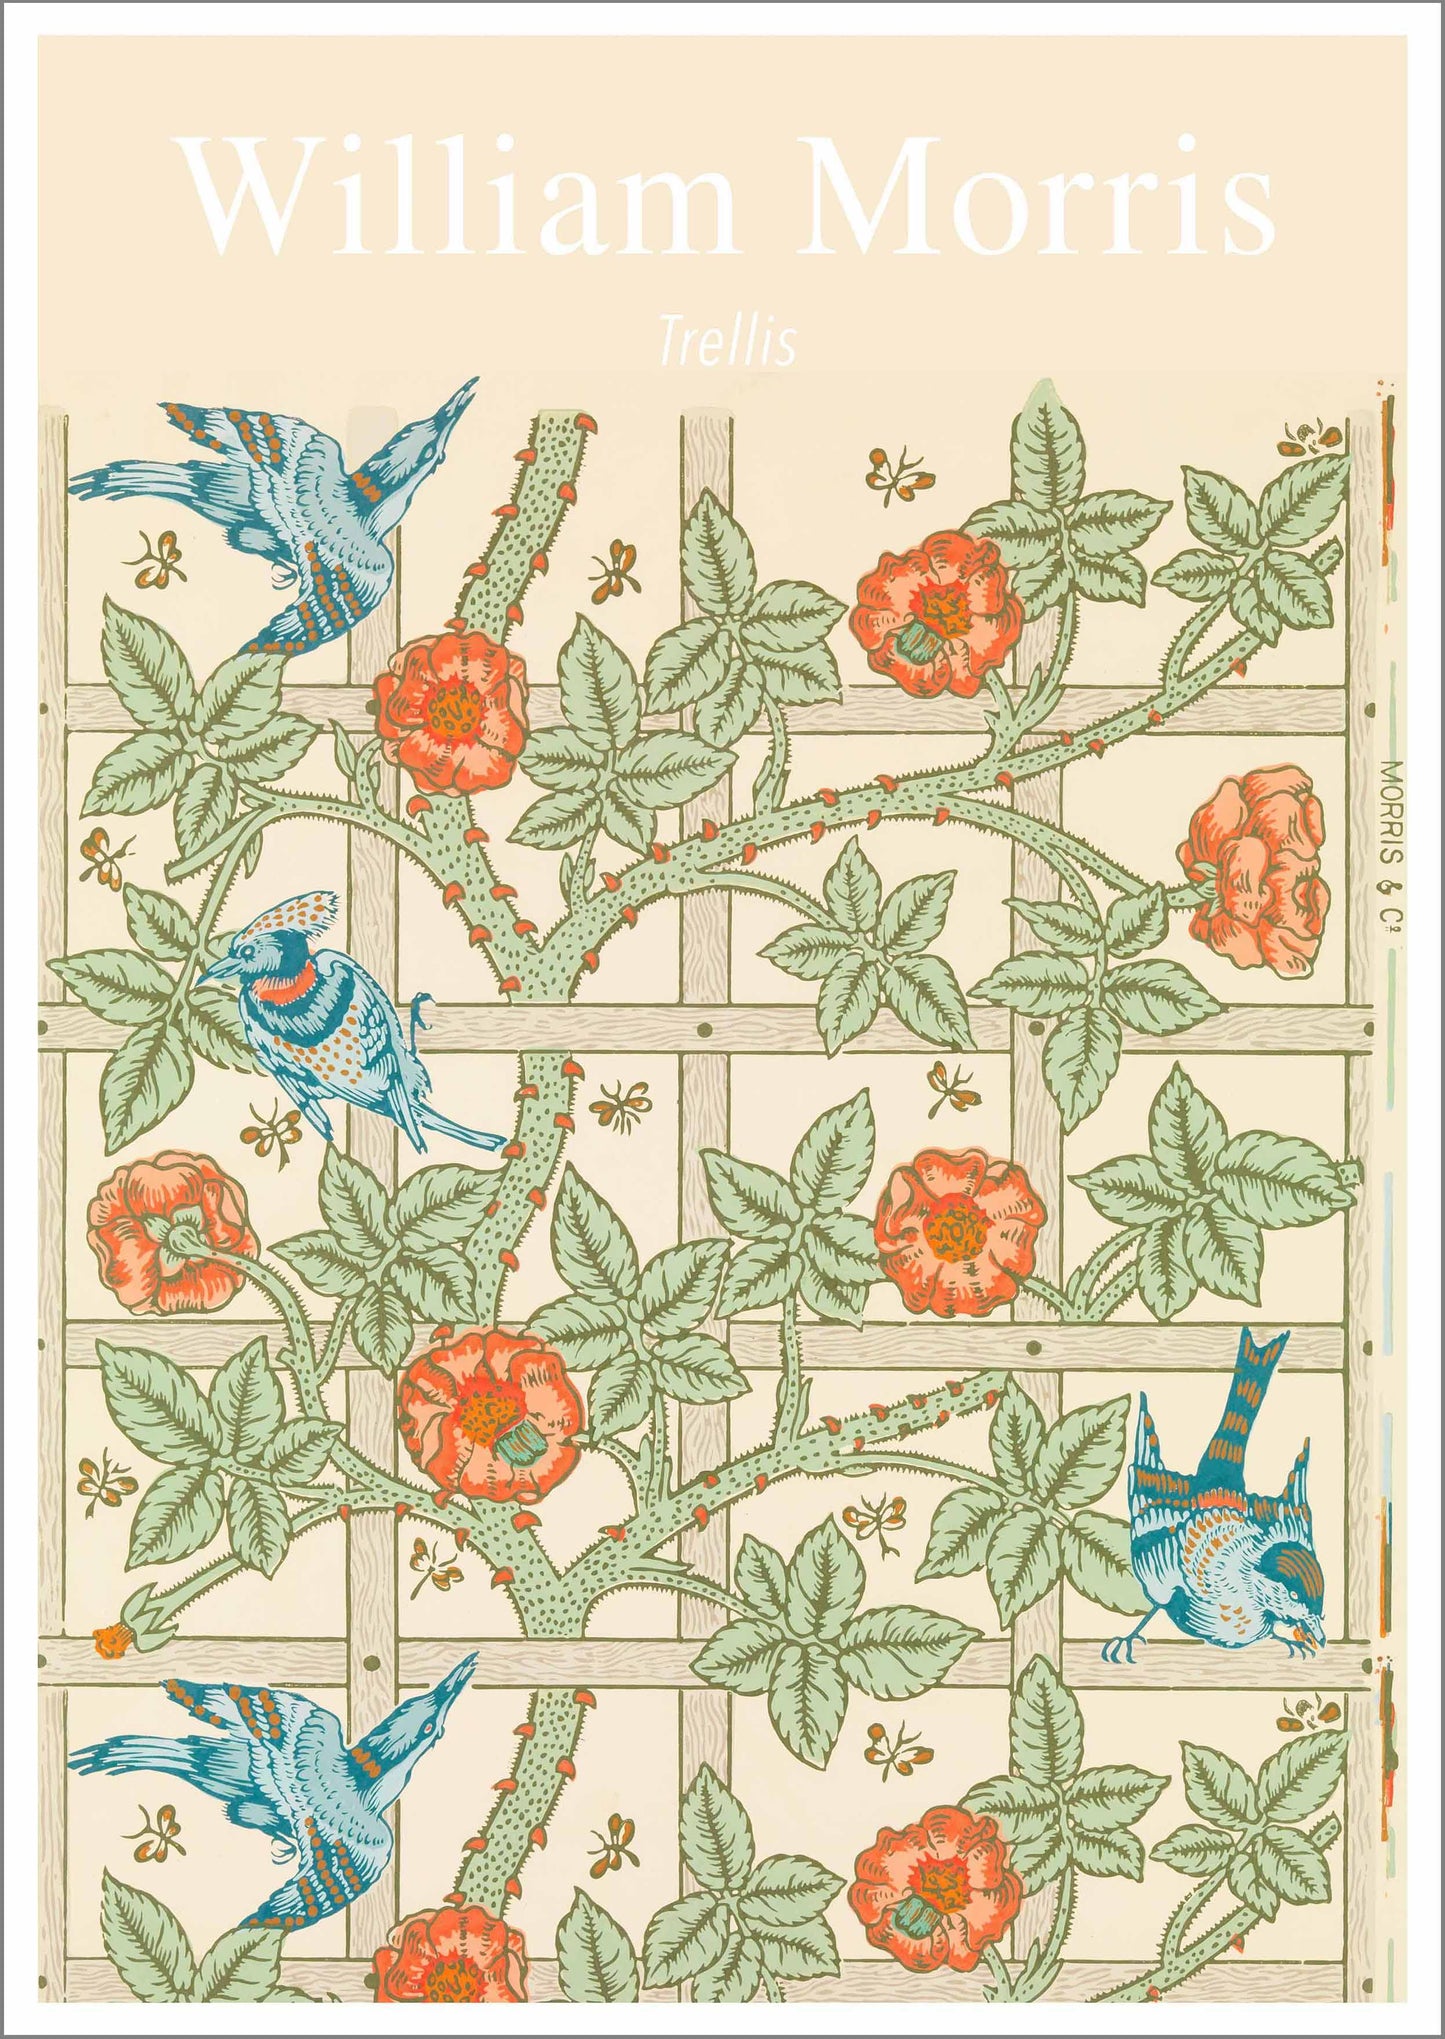 WILLIAM MORRIS ART PRINT: Trellis Pattern Design Artwork - Pimlico Prints